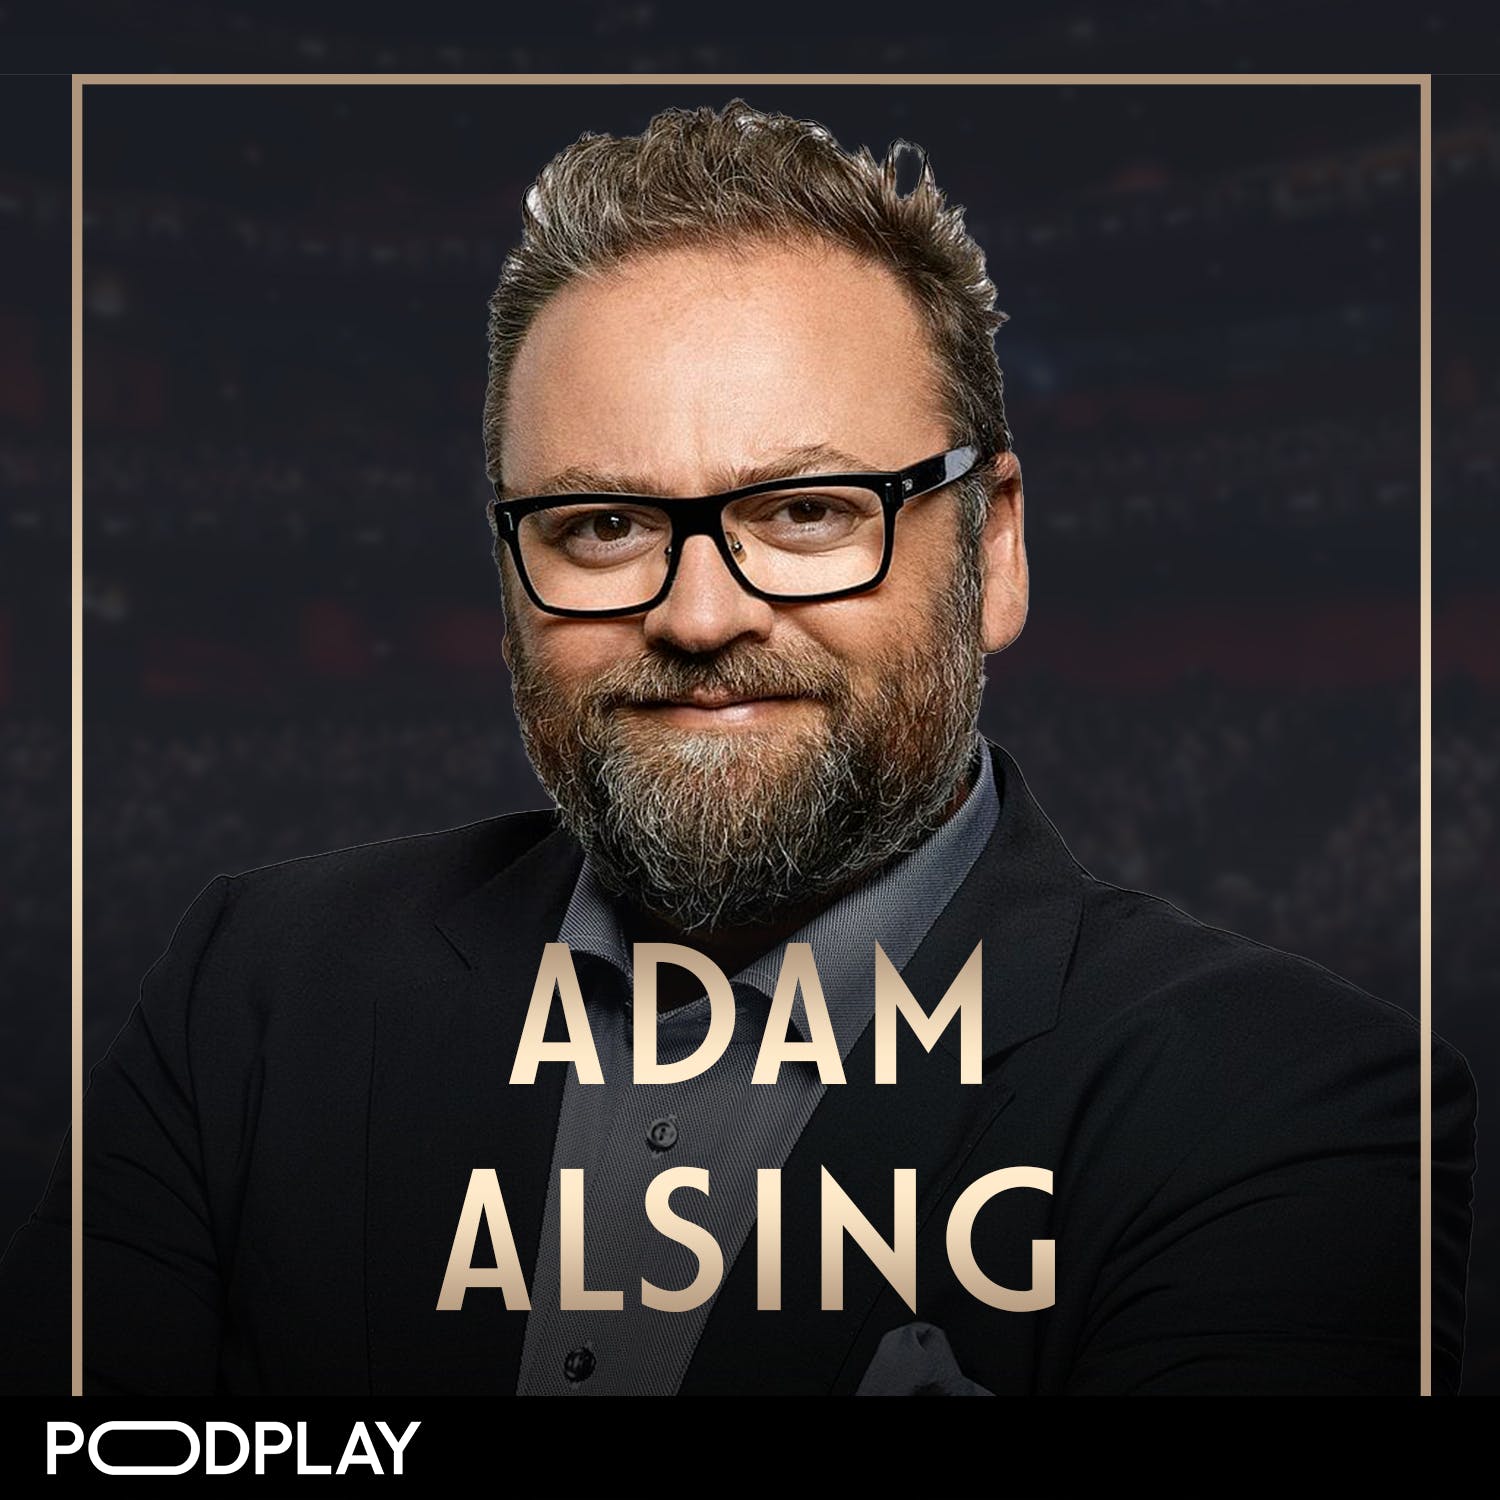 241. Adam Alsing, Förlorade allt - nådde framgång, Original